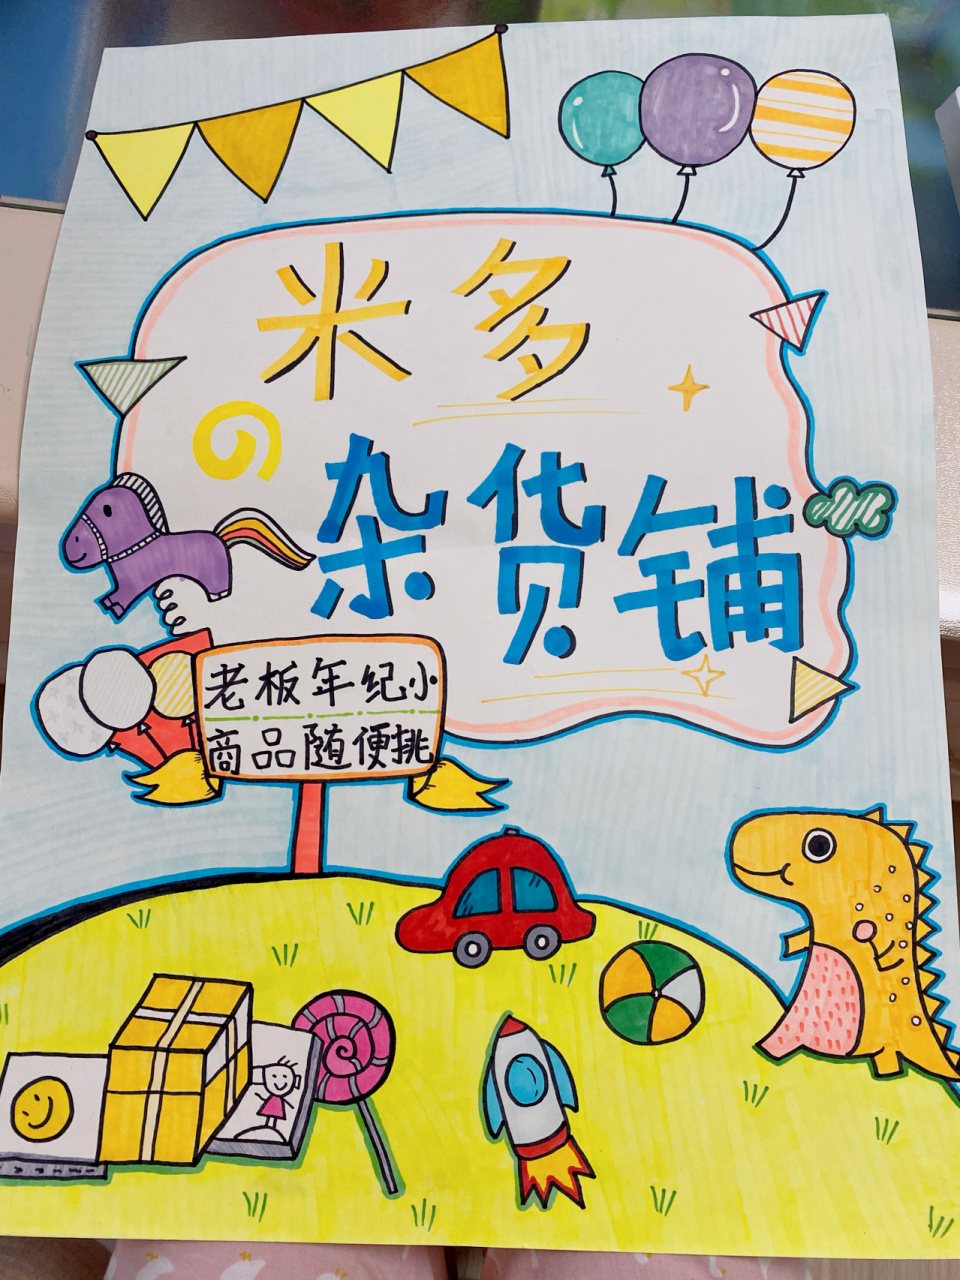 跳蚤市场海报马克笔手绘 幼儿园老师帮画哒～ 自己上了个色 还是很